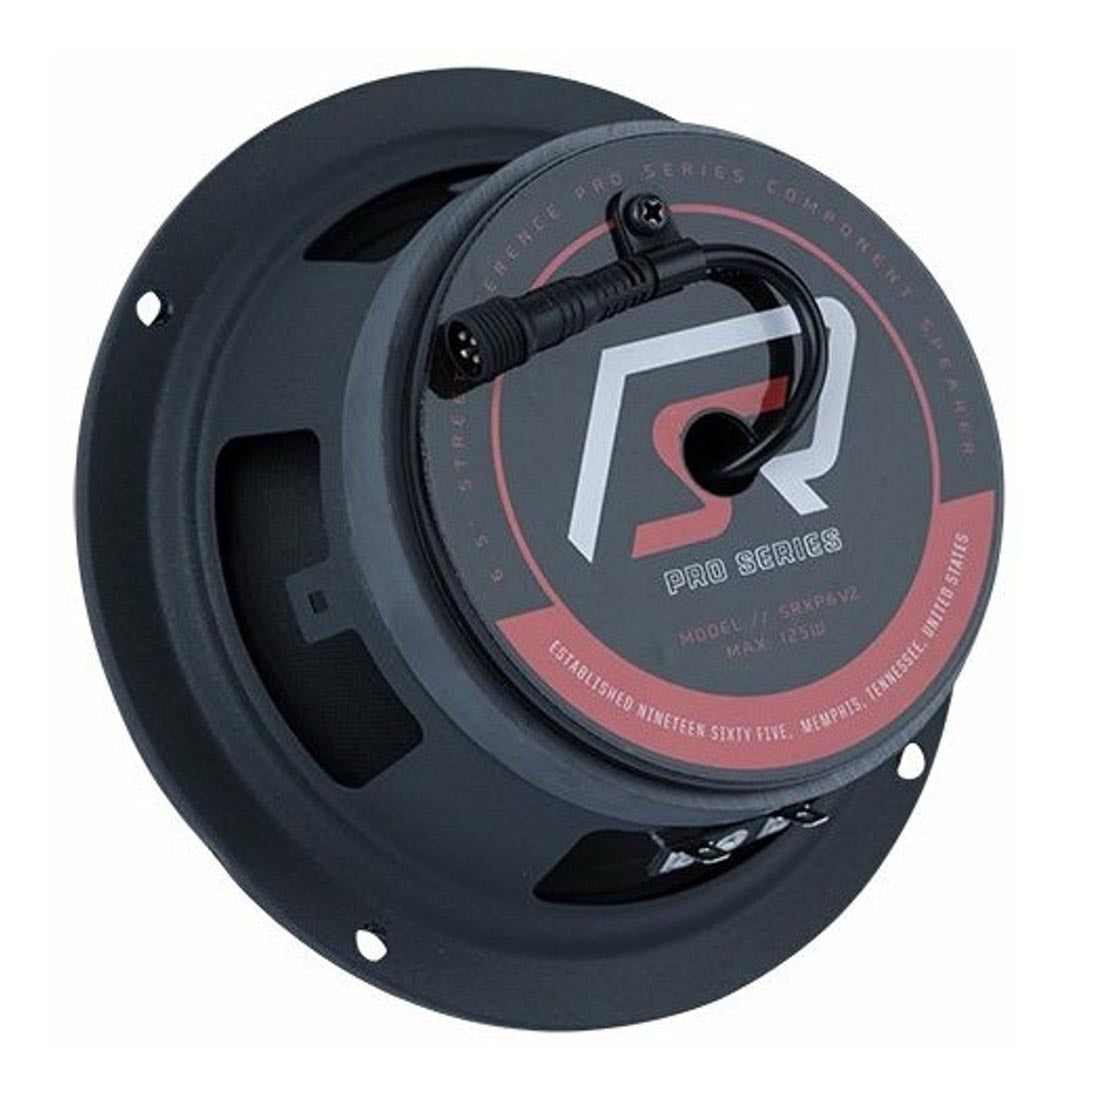  Memphis Audio SRXP62CV2 6.5" Component Speaker System